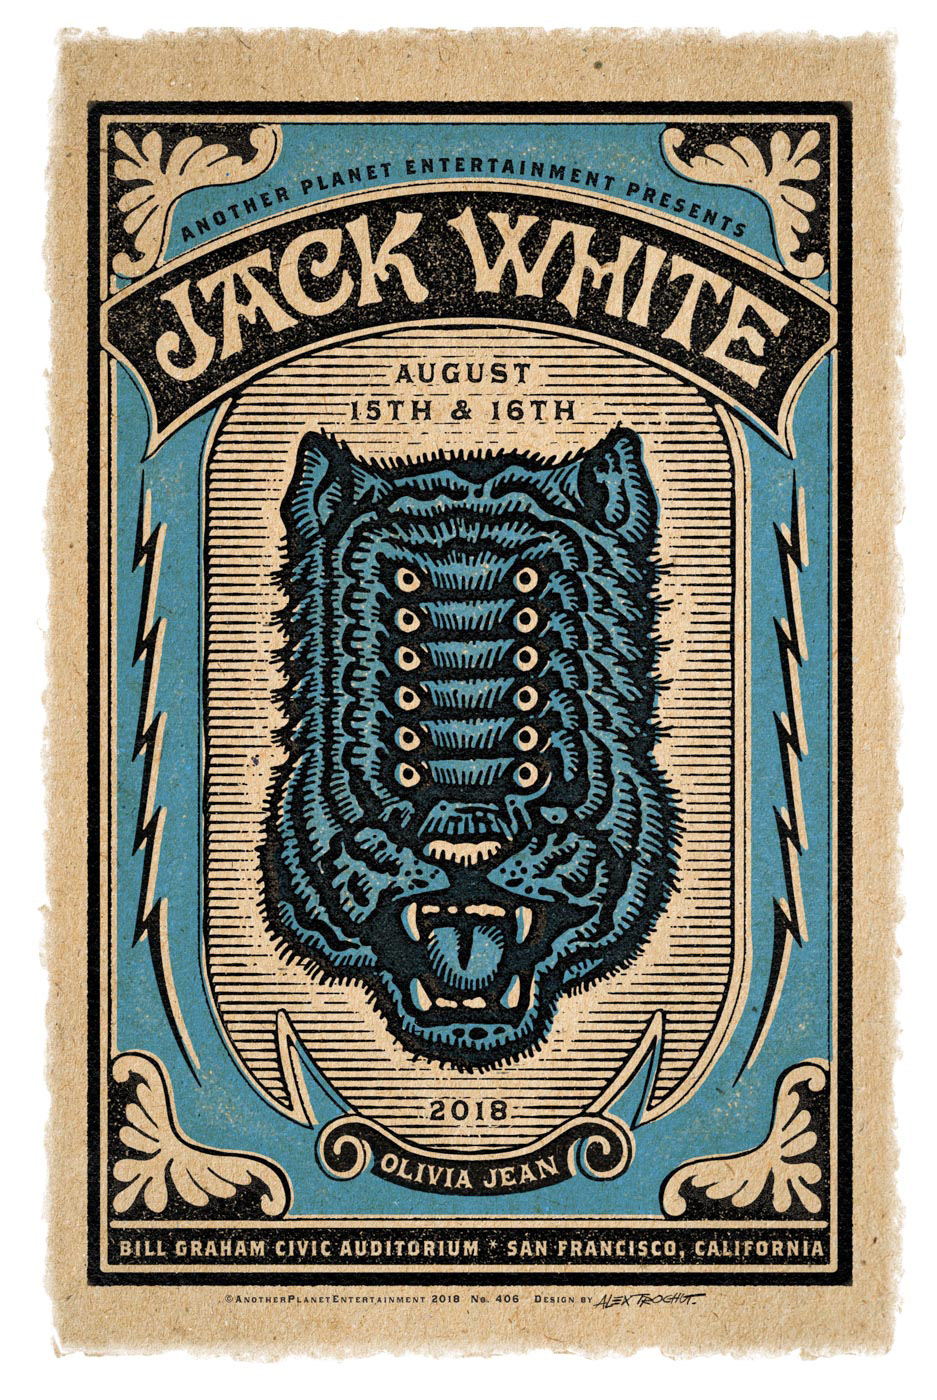 Alex trochut ILLUSTRATION  jack white Poster Design limited edition rock n roll Matchbox tiger electric vintage